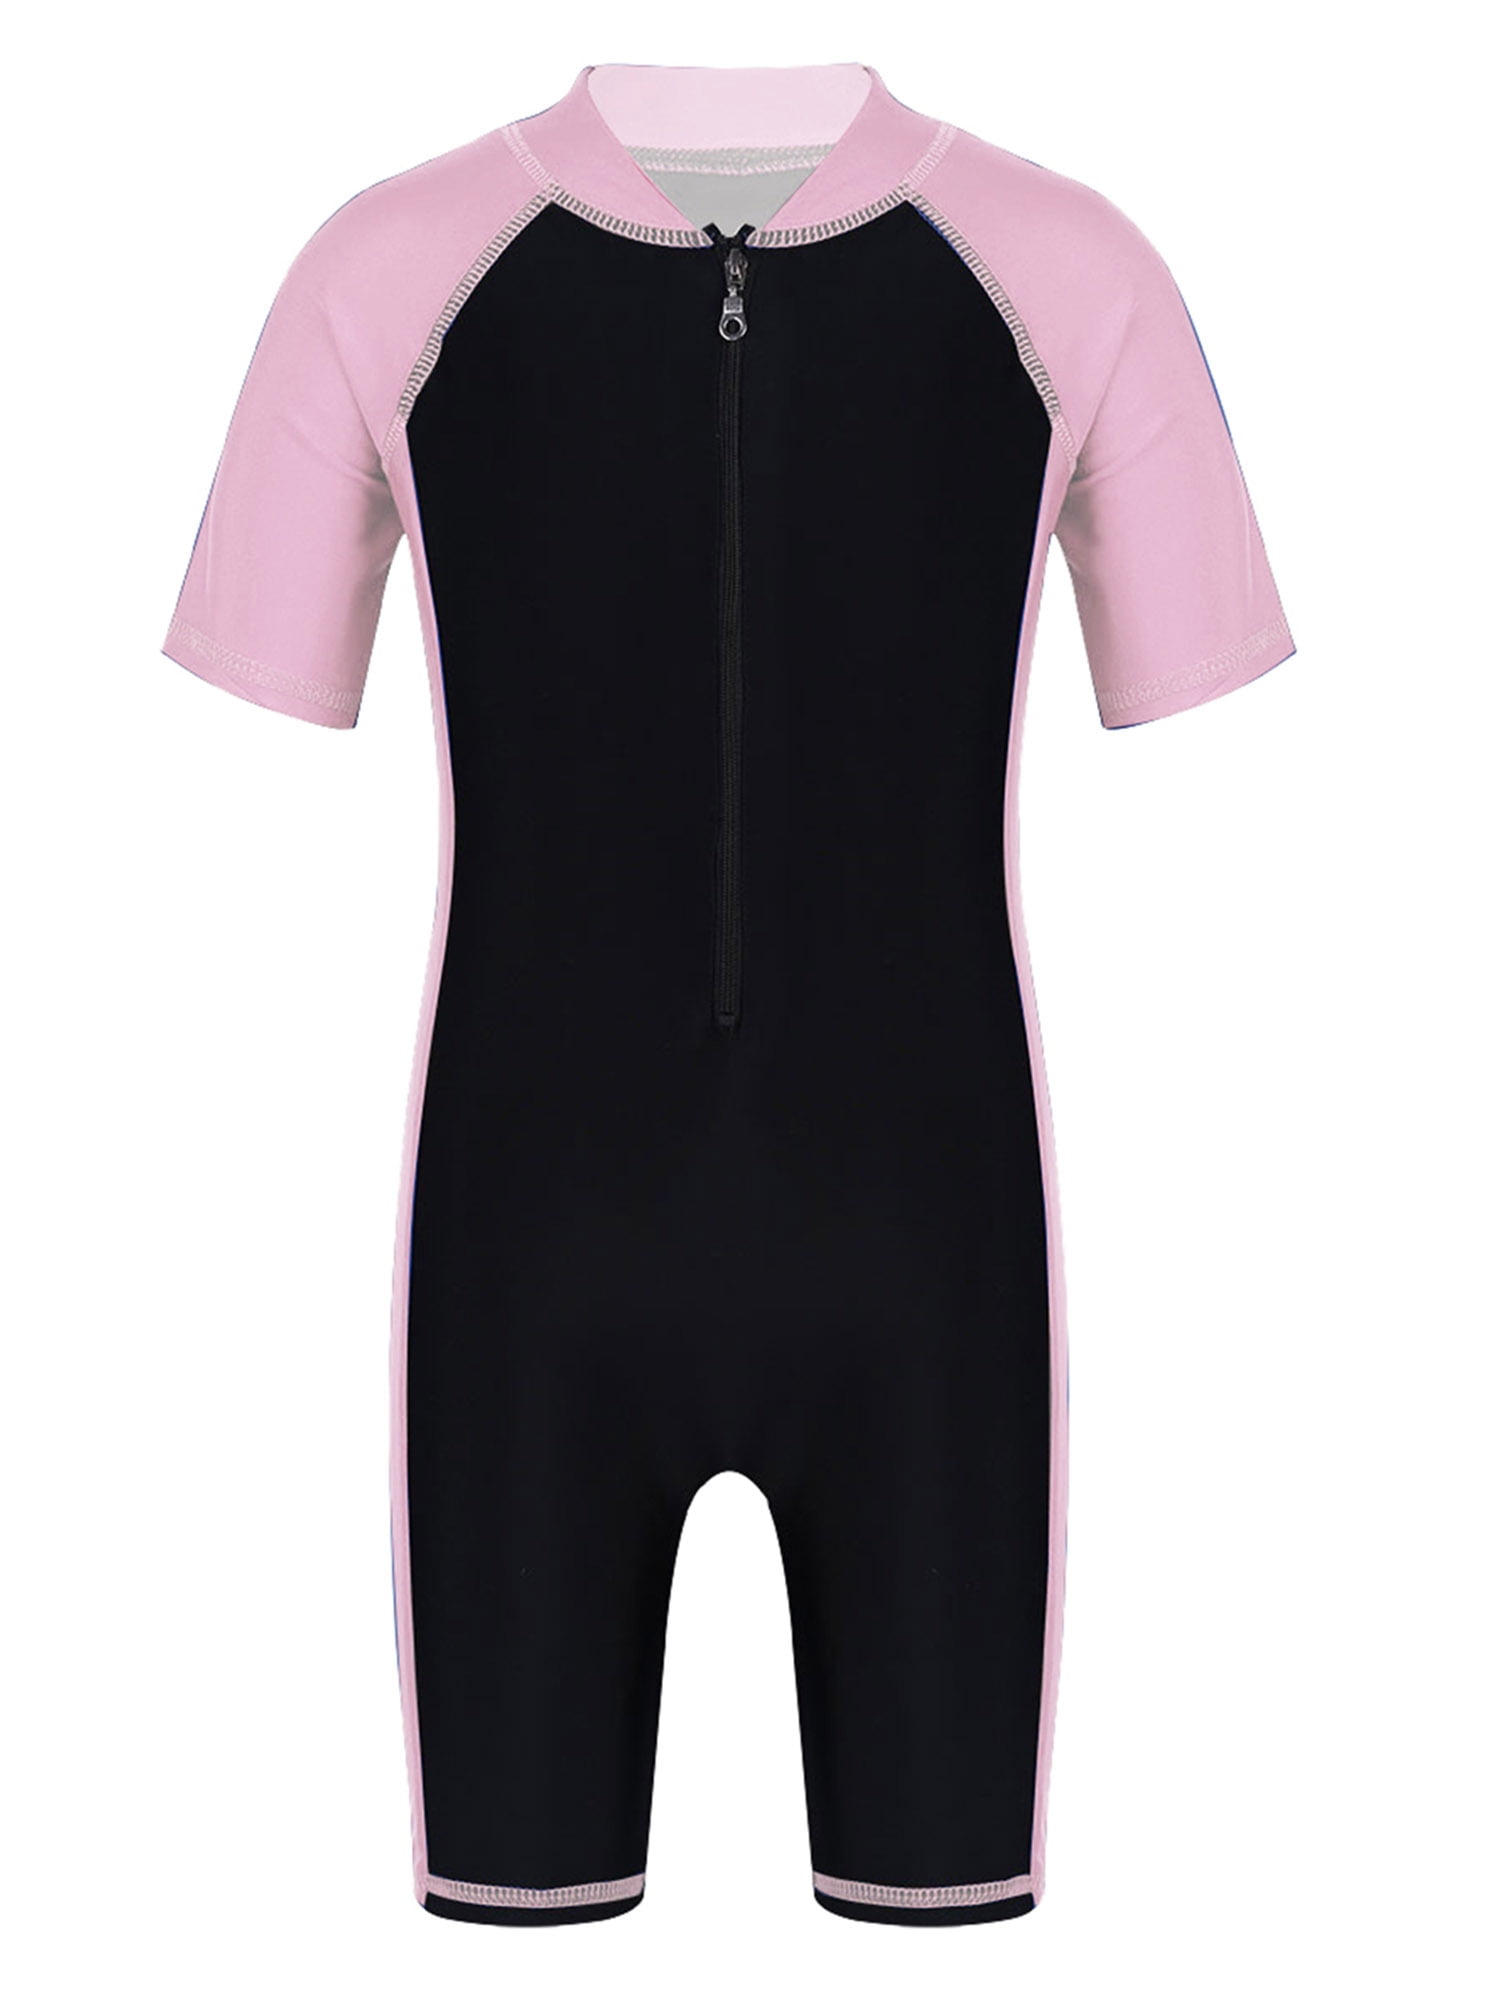 YiZYiF Baby Boys Toddler Stripes Short Sleeve UPF 50 UV Protective Swimsuit Bathing Suit 